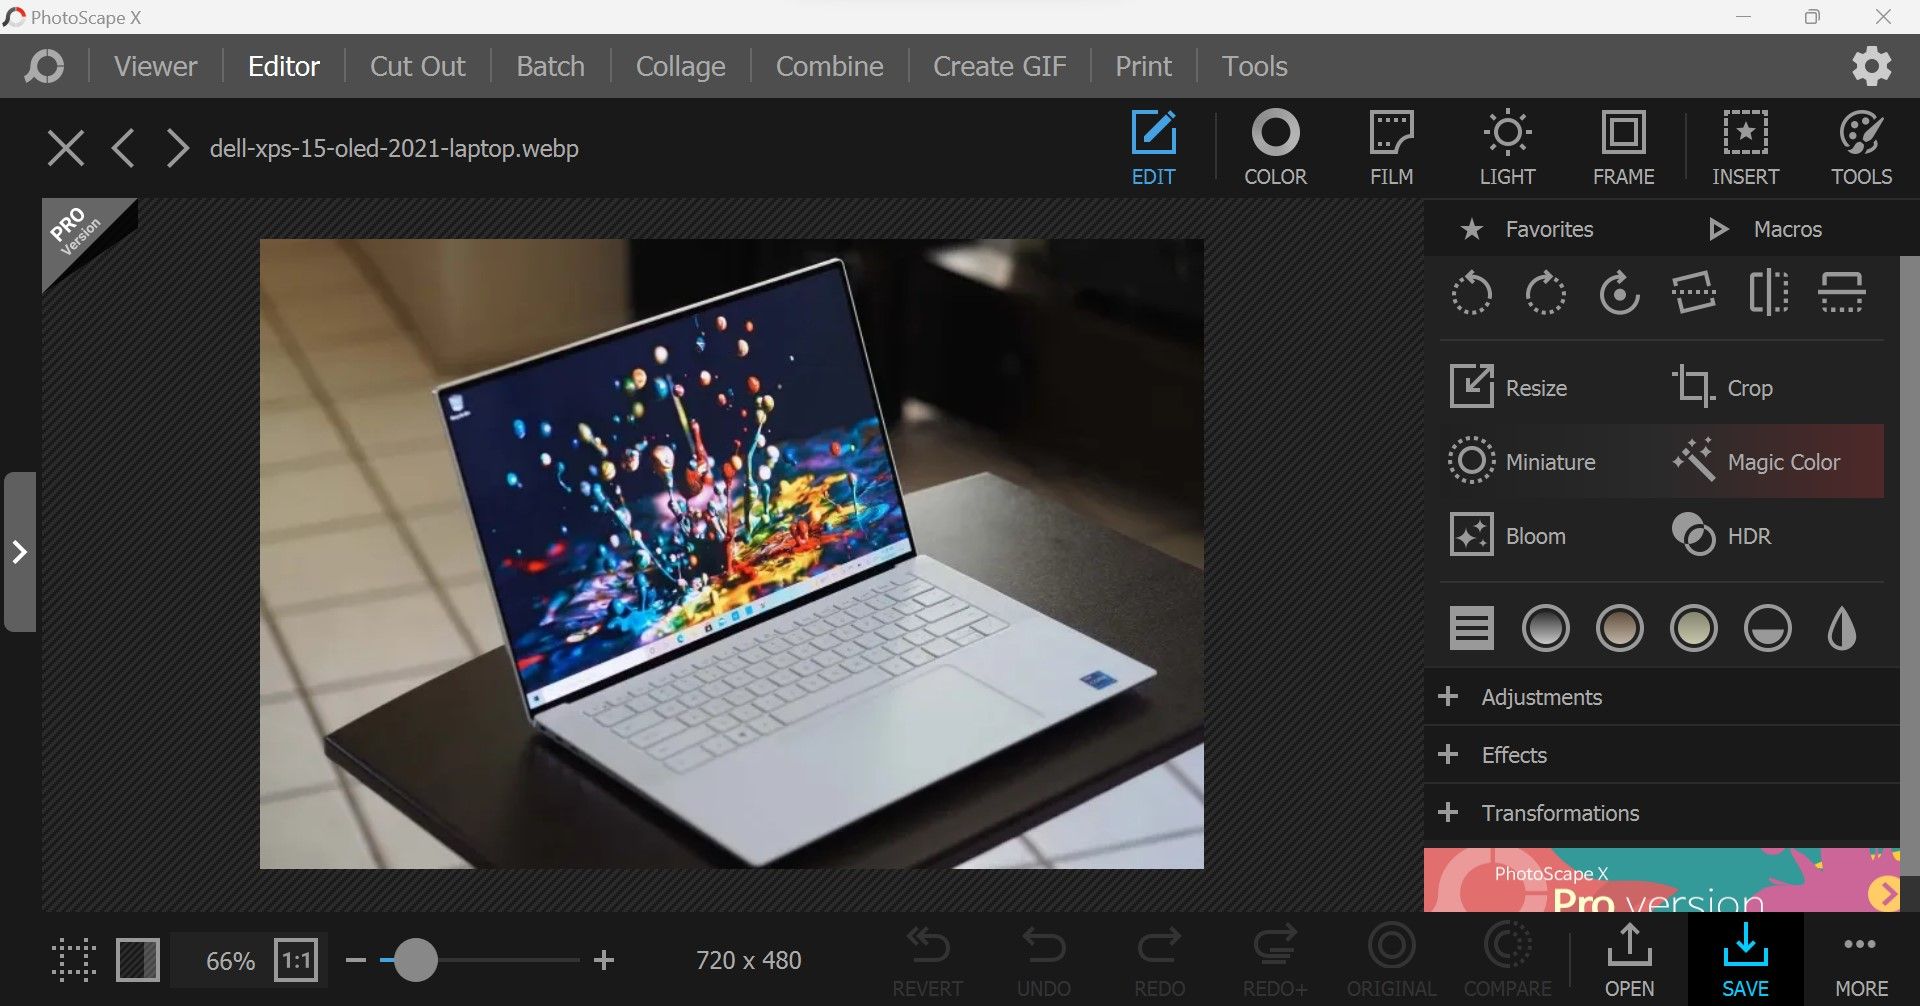 单击 Windows 上 PhotoScape X 应用程序右下角的保存按钮，在编辑后下载图像